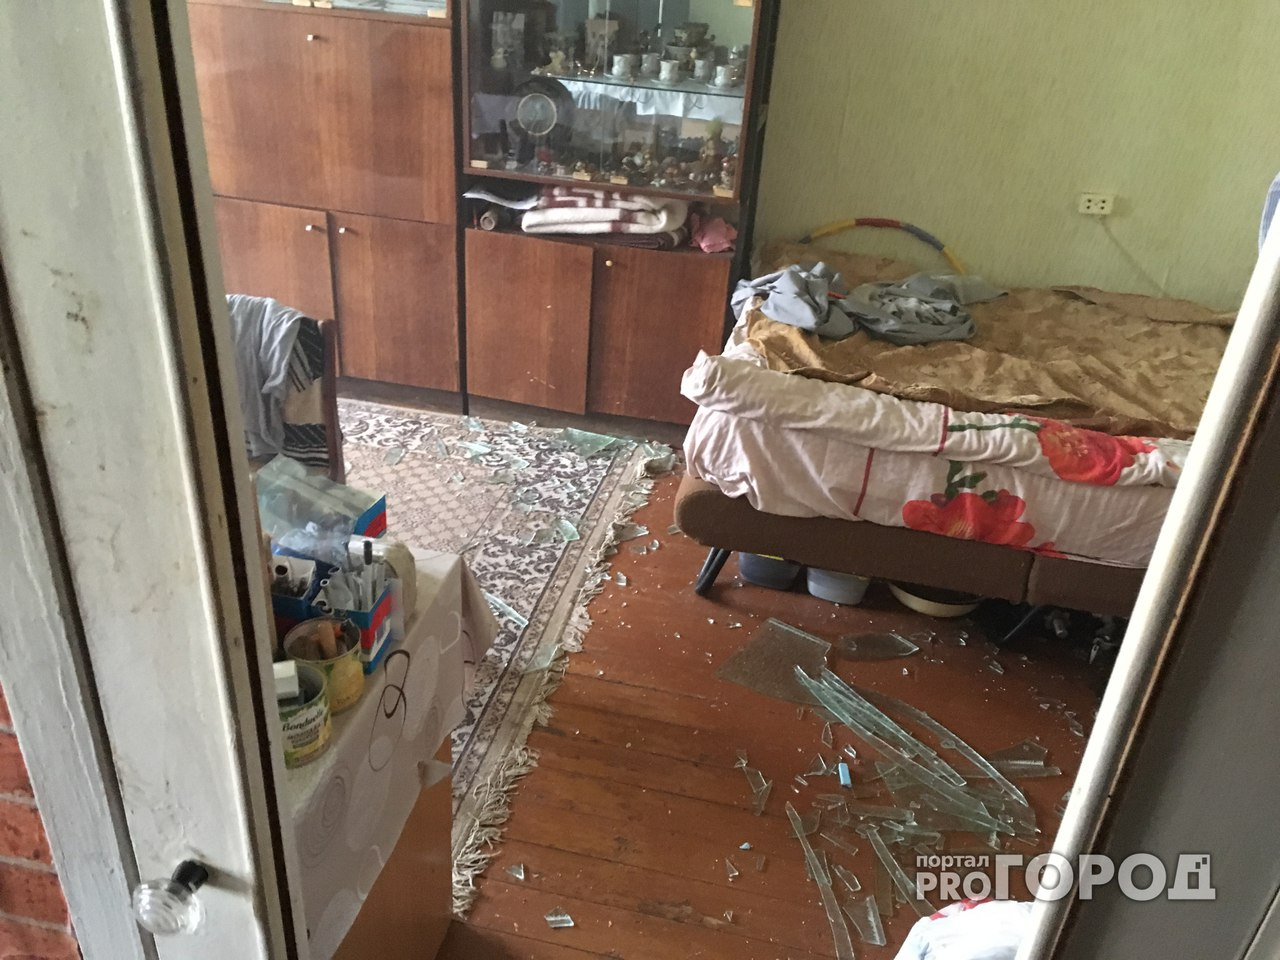 Эвакуация и паника: в Заволжском районе Ярославля прогремел взрыв